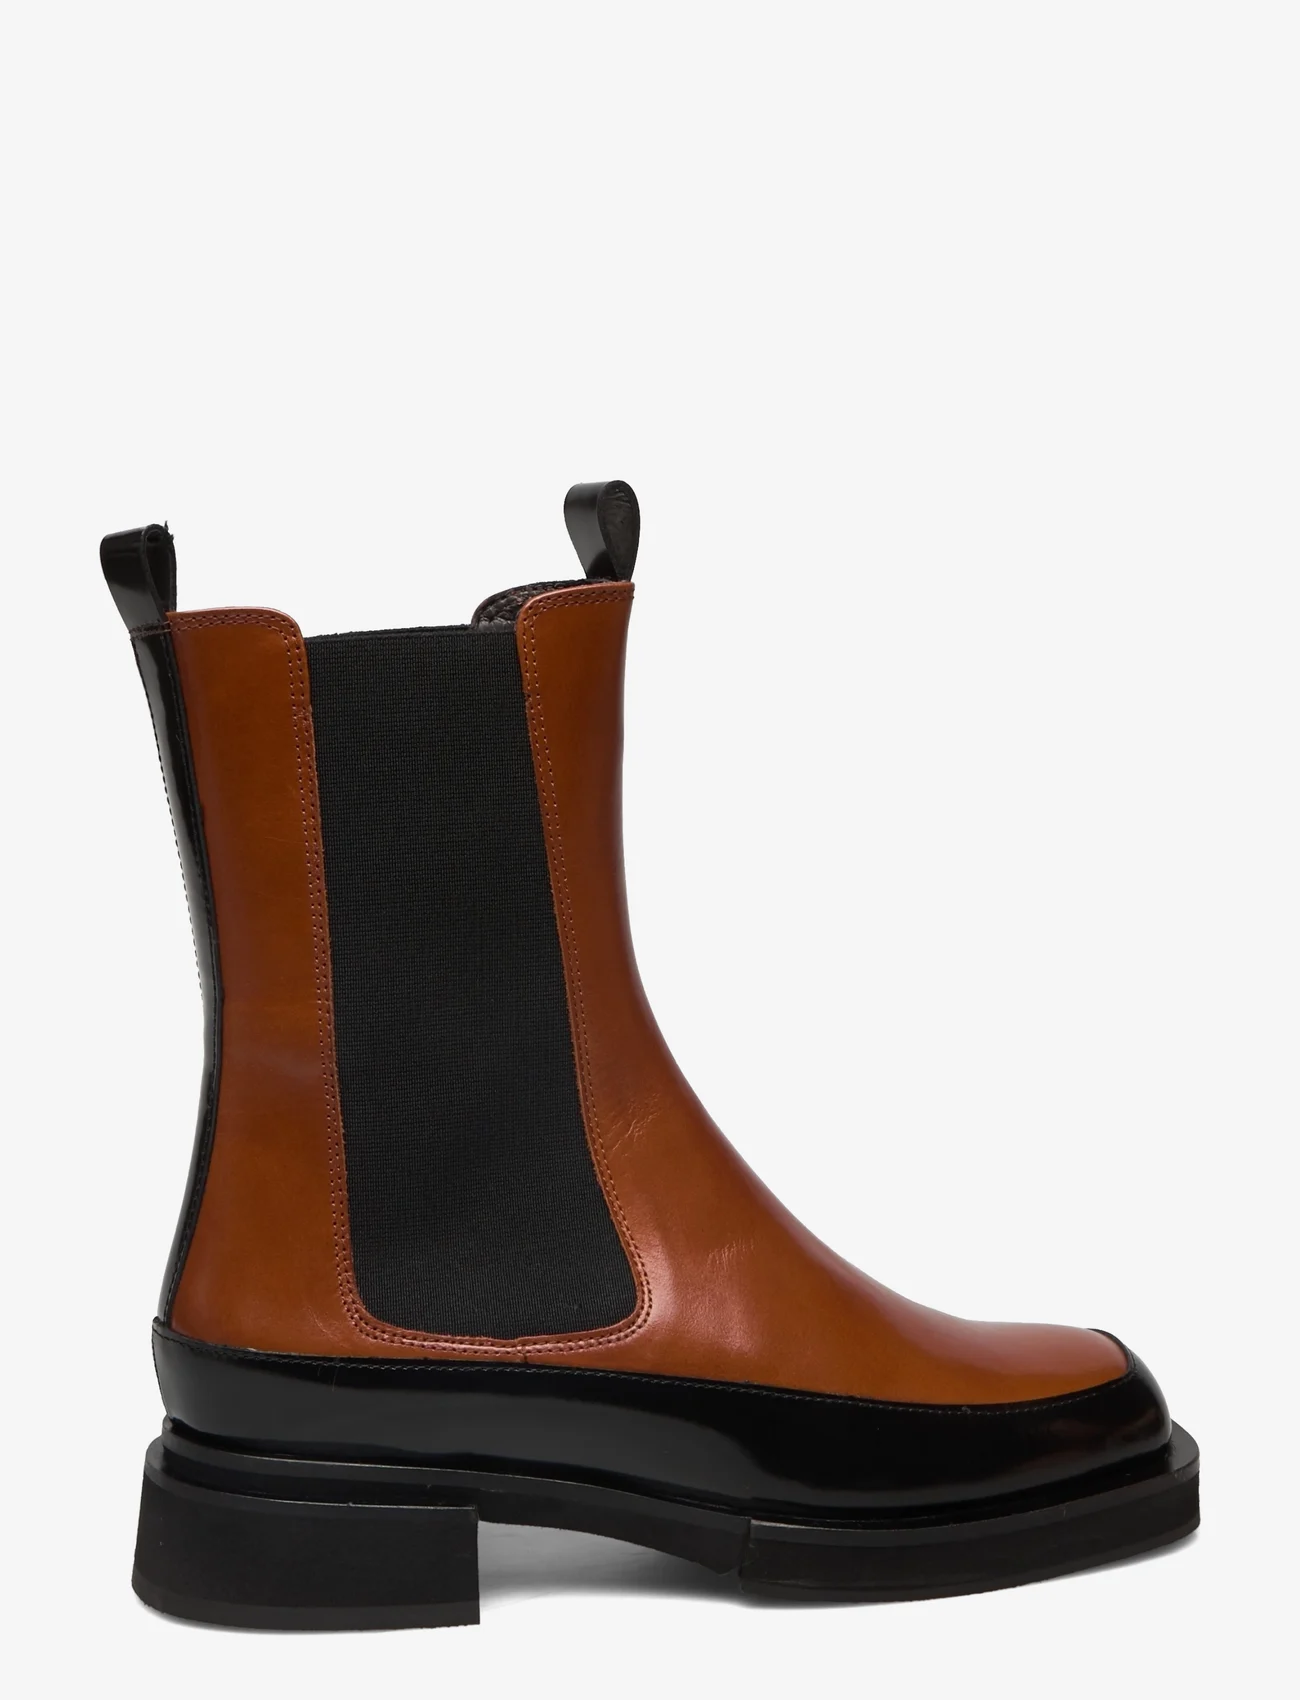 Billi Bi - Boots A3075 - chelsea boots - bl.polido/cognac calf 985 - 1